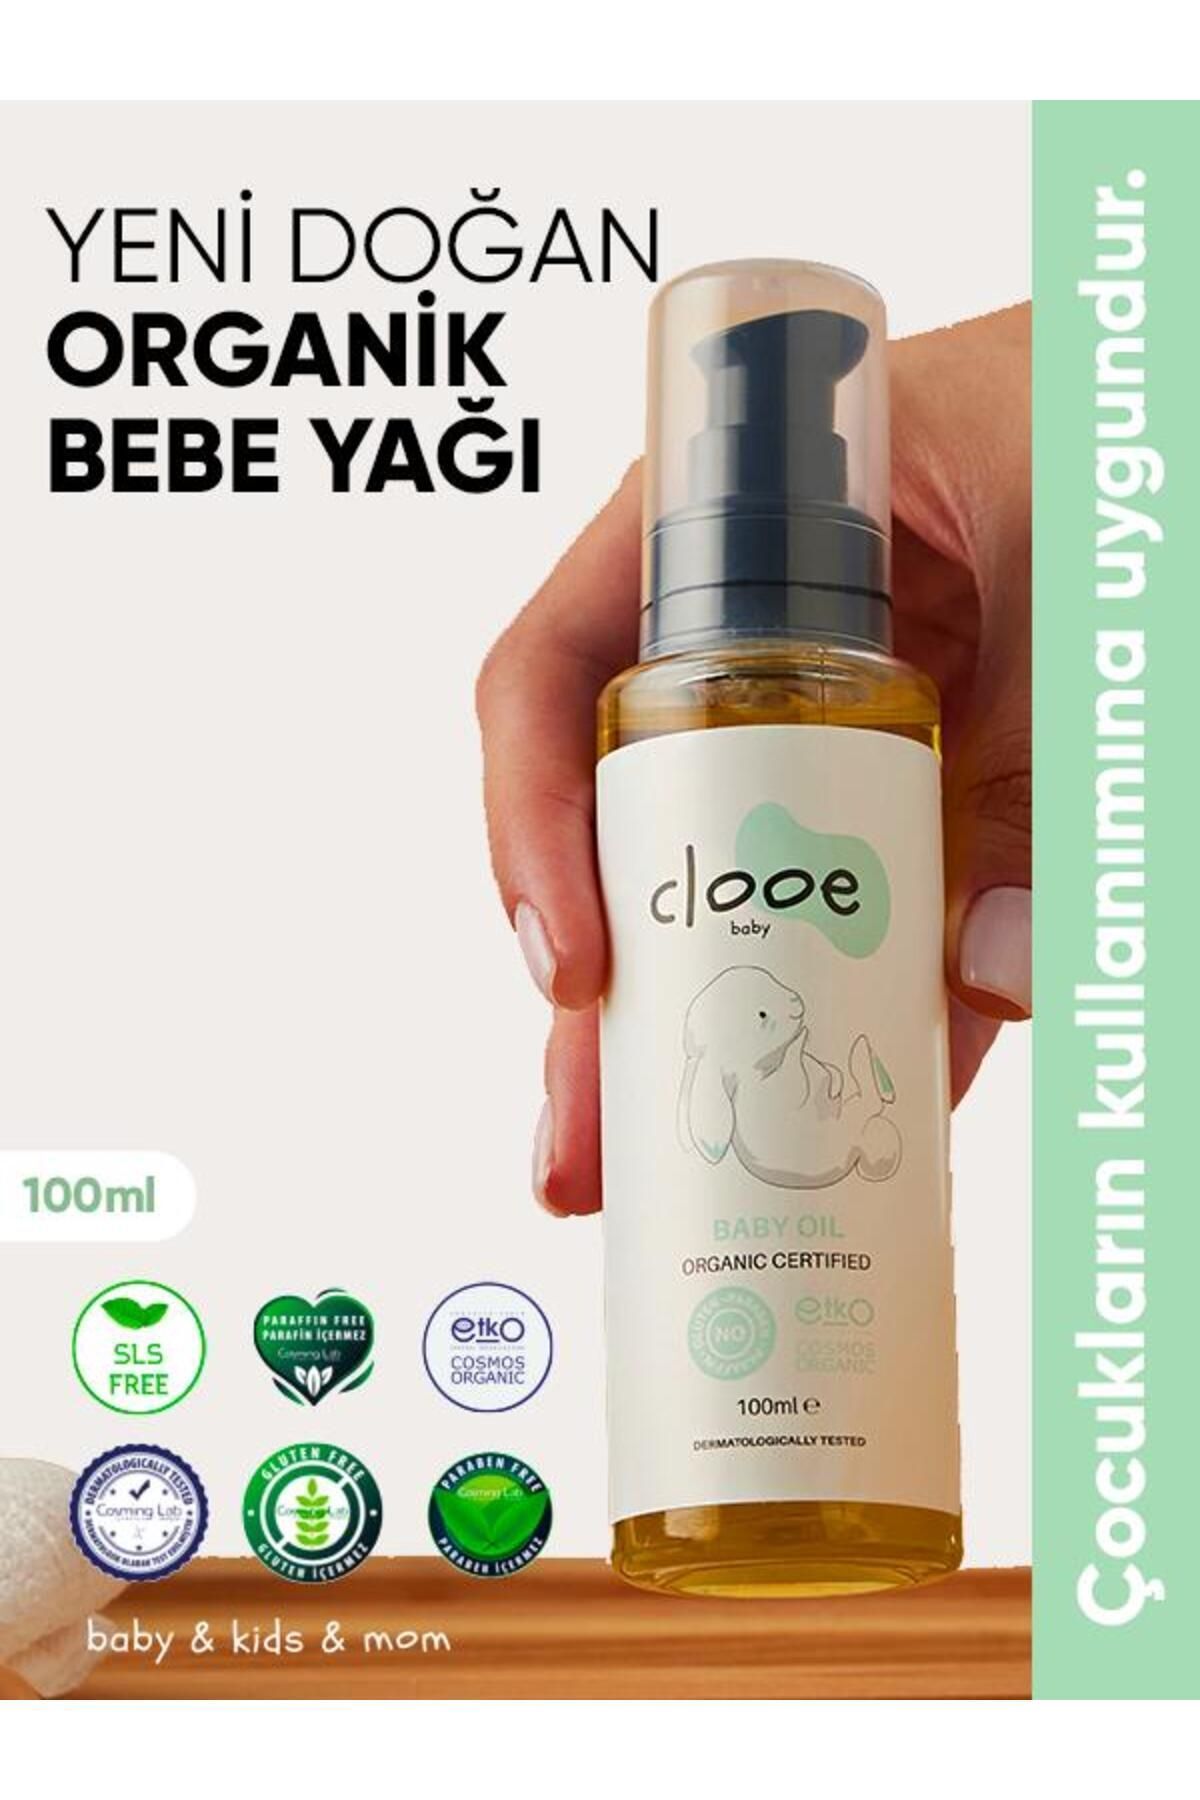 clooe organics Clooe Organik Bebek Yağı (100ML) - Zeytinyağı, Badem Yağı, Jojoba Yağı - Yenidoğan Kullanımına Uygun